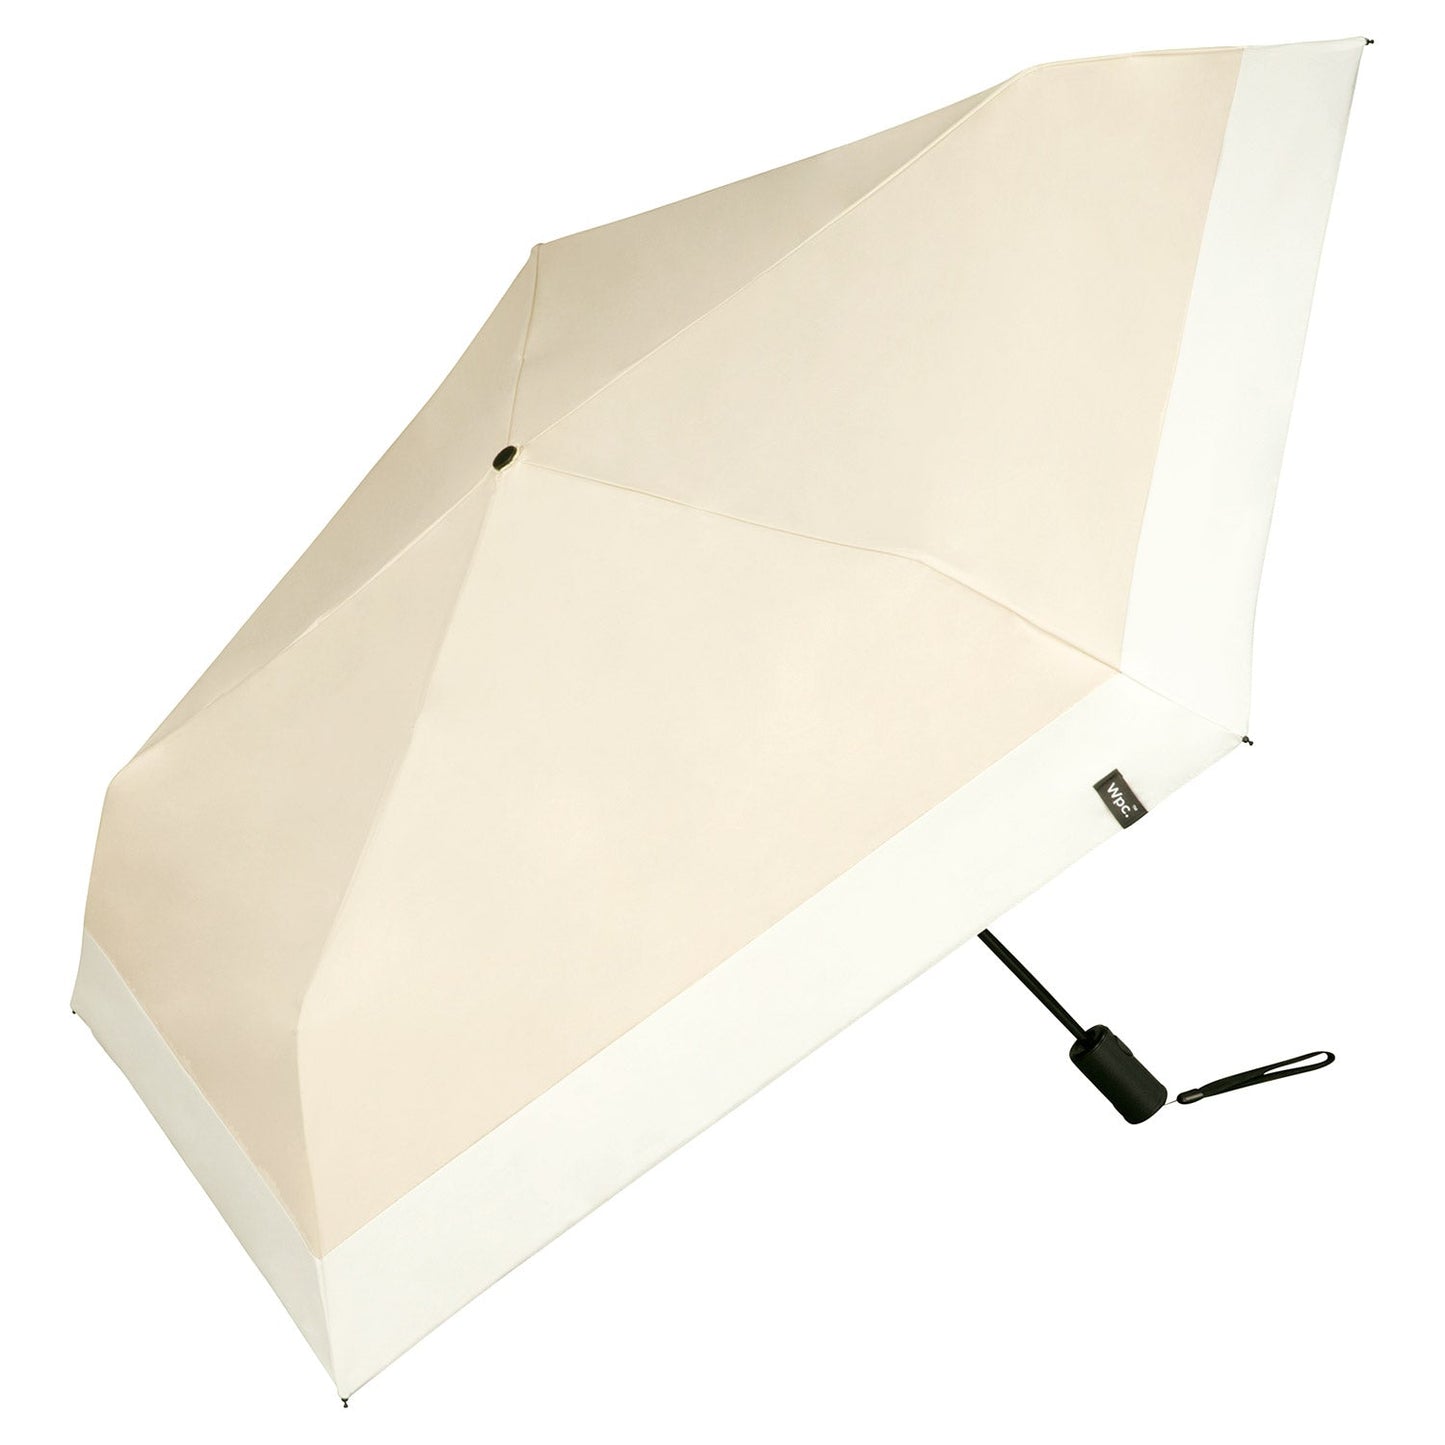 防紫外光系列自動開關雨傘